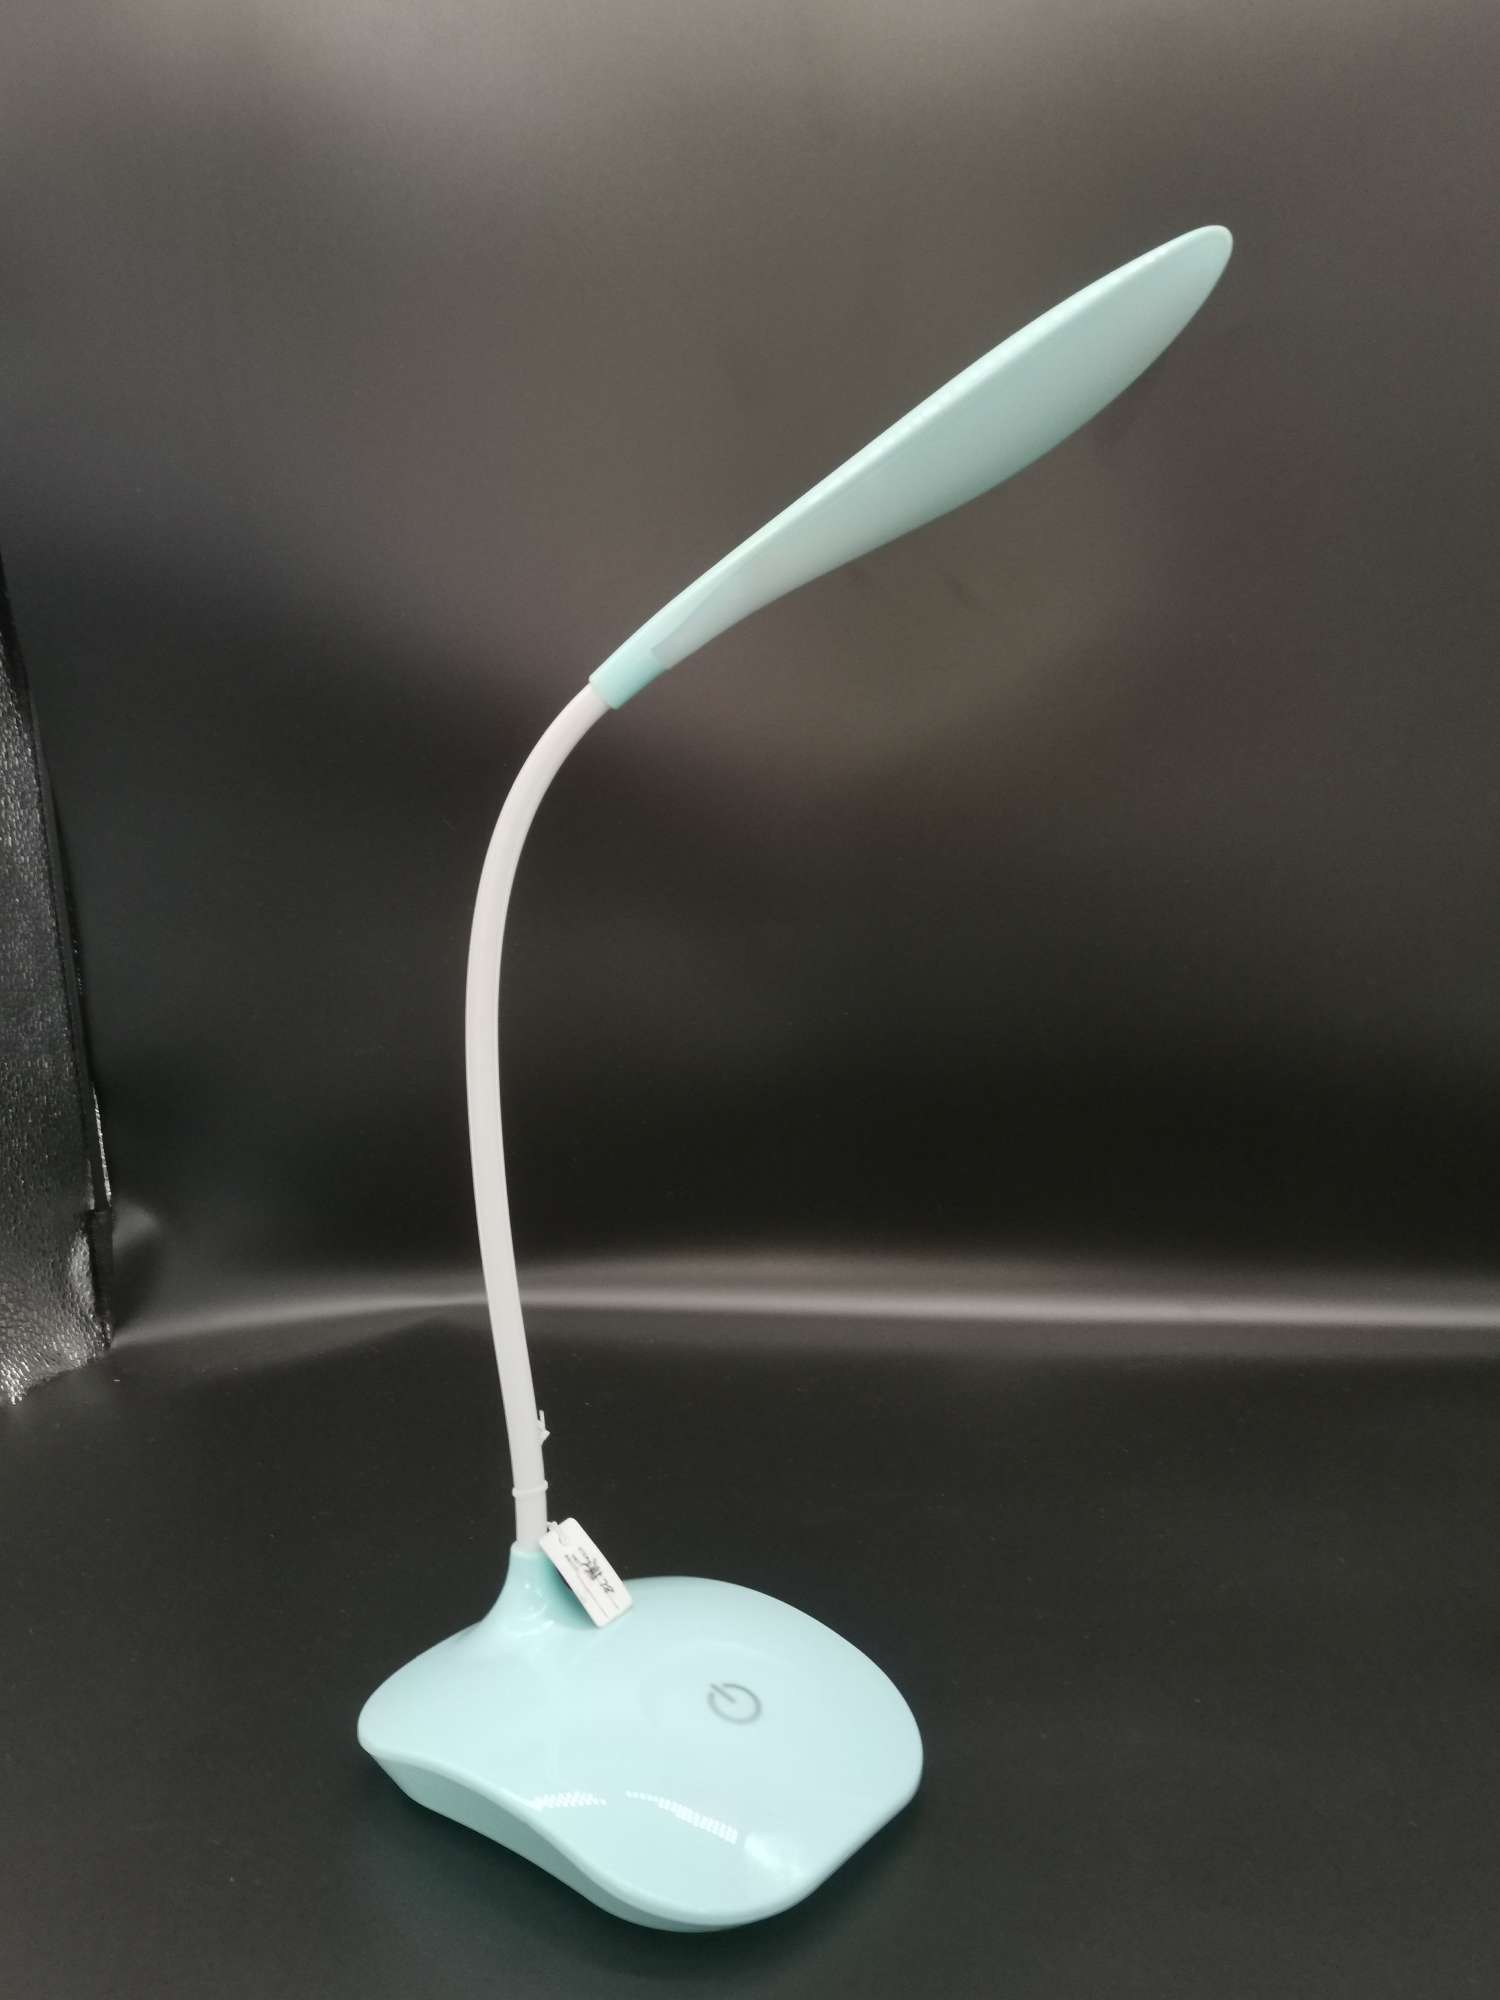 厂家直销跨境led护眼小台灯触摸式3档调节USB充电学生卧室小夜灯白底实物图